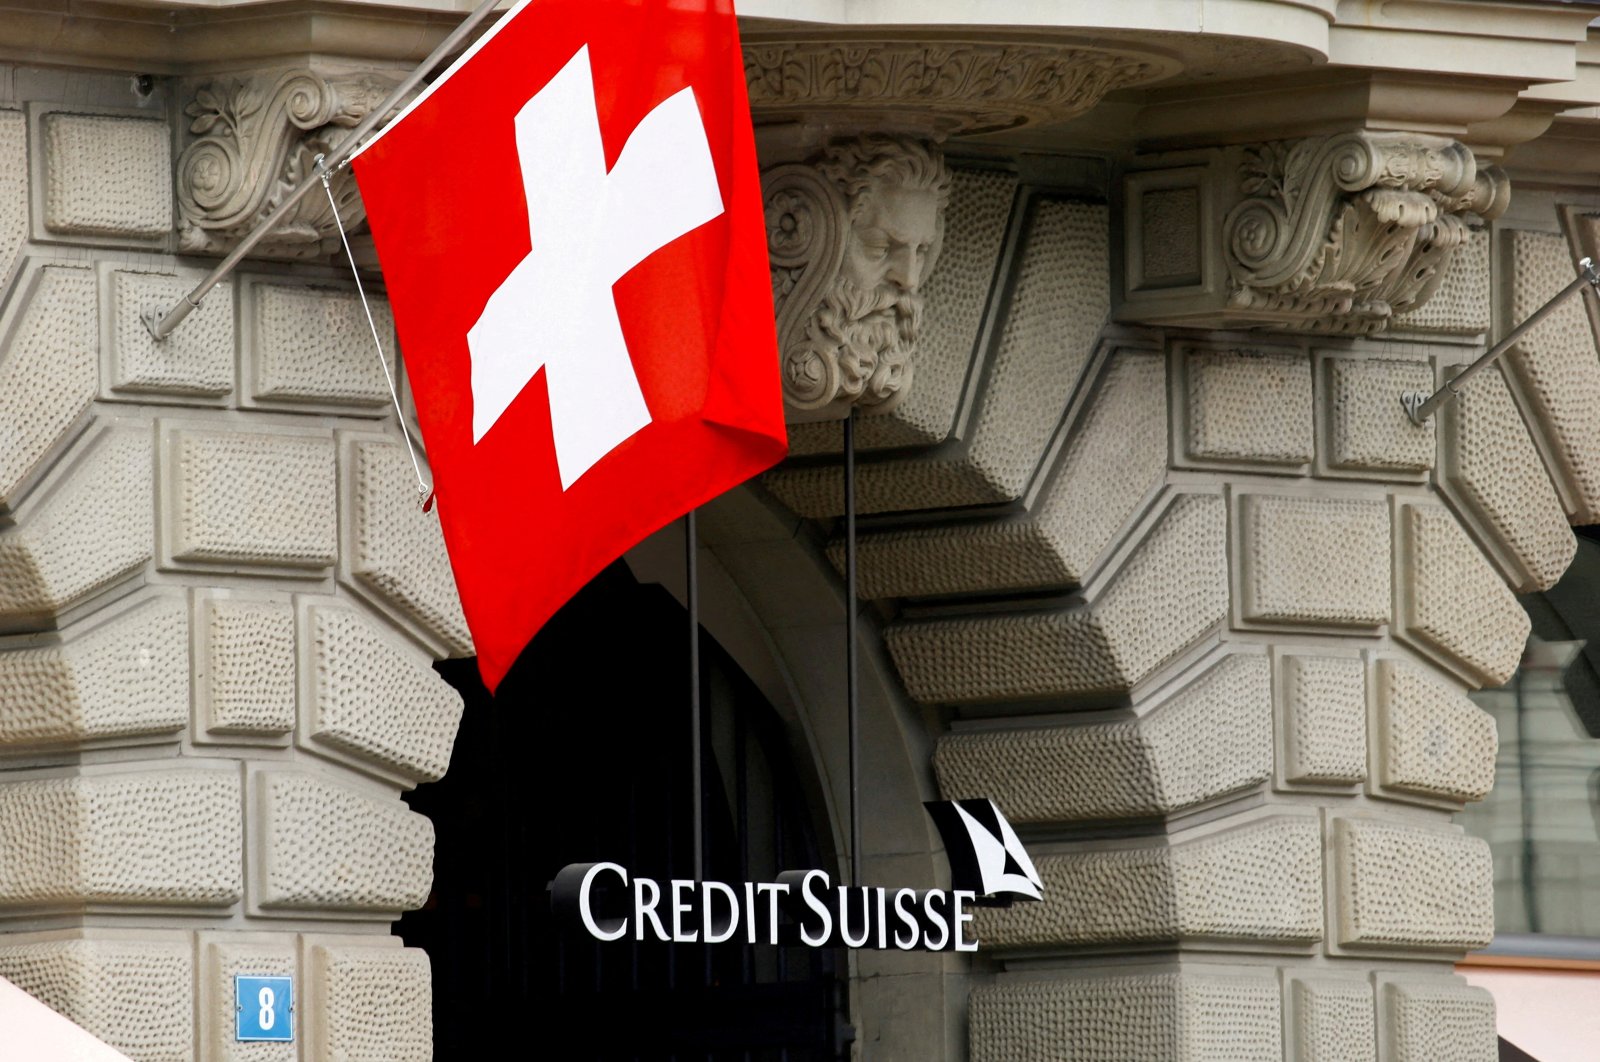 Credit Suisse setuju untuk membayar 5 juta untuk menyelesaikan kasus warisan